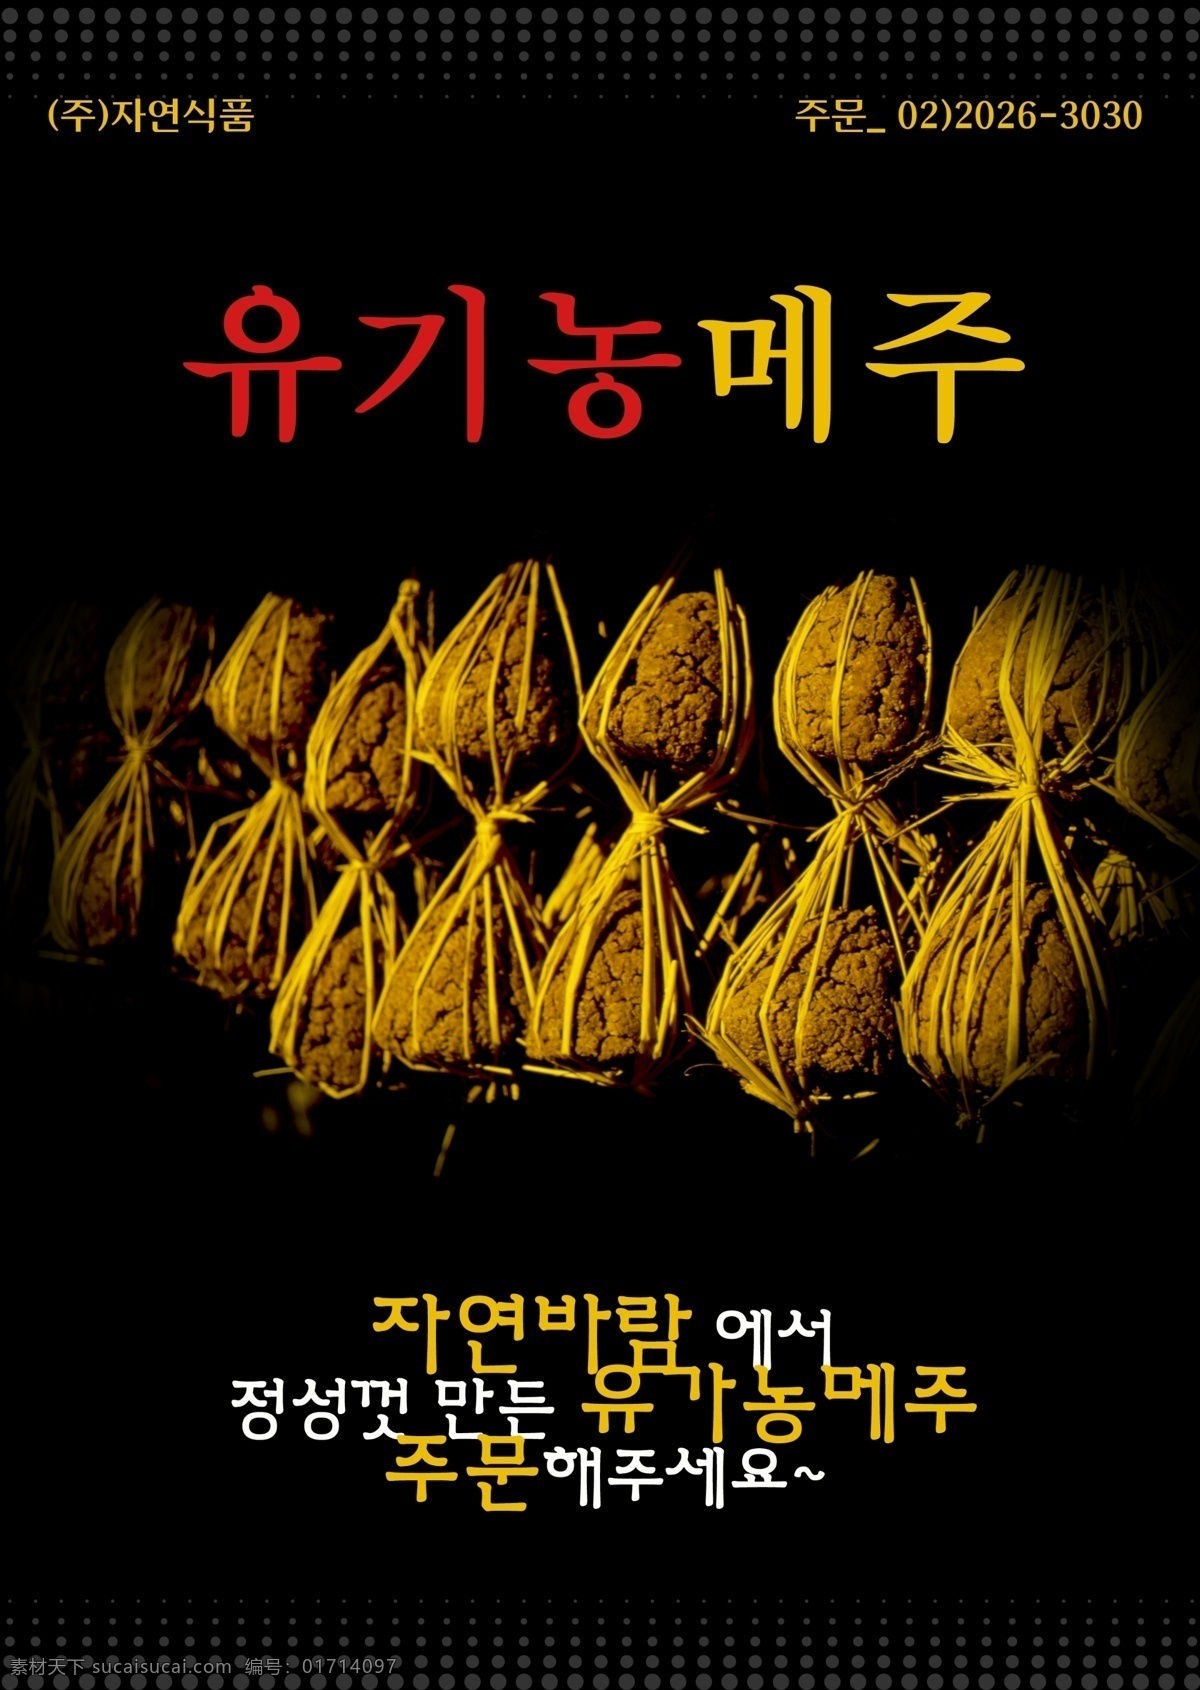 创意 韩国 美食 海报 psd素材 创意海报 韩国美食 美食海报 其他海报设计